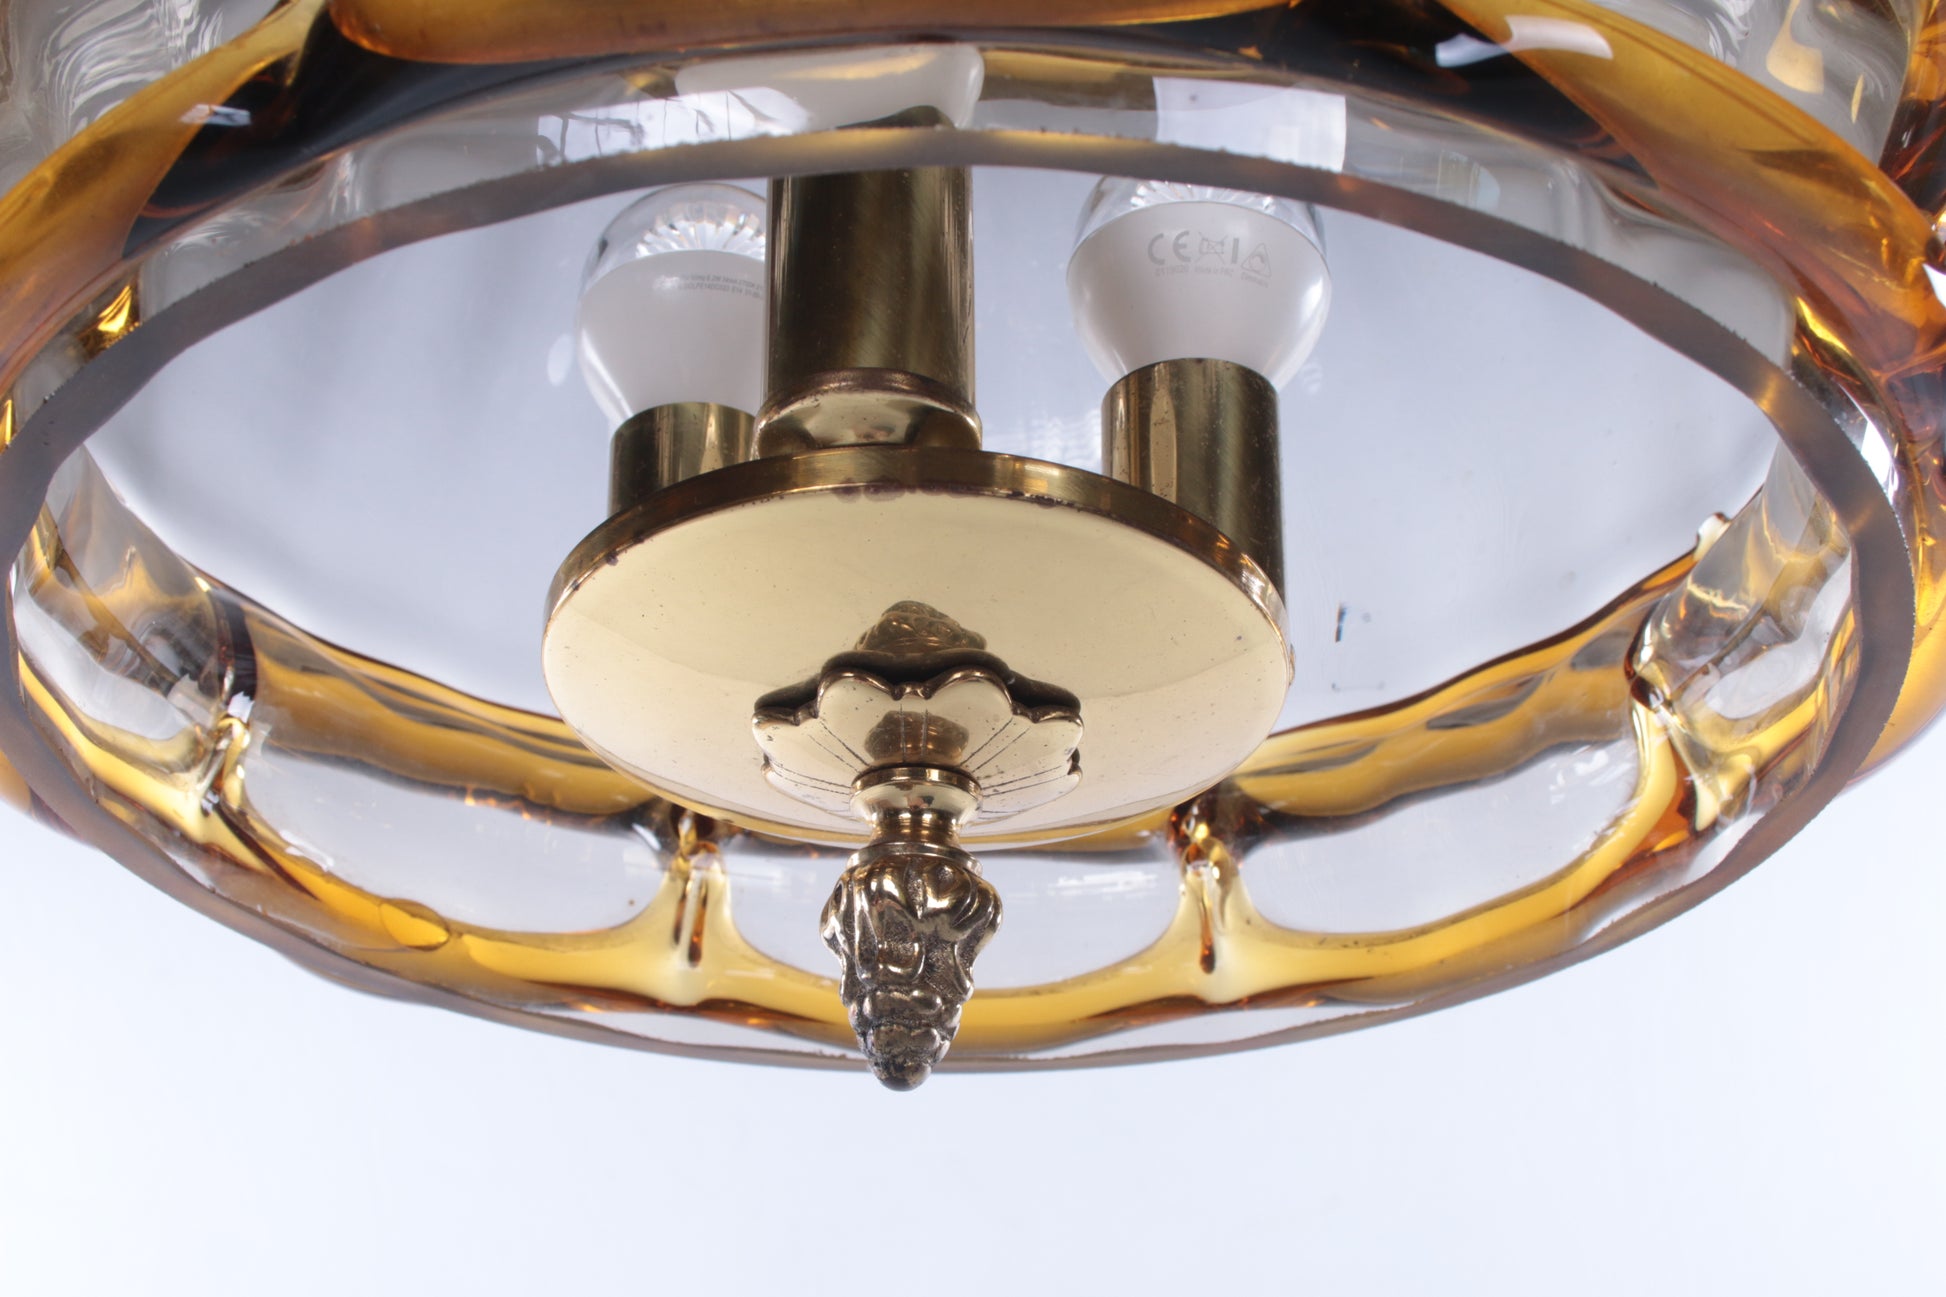 Hollywood Regency Hanglamp met Murano glas,Fischer Leuchten 70s detail onderkant